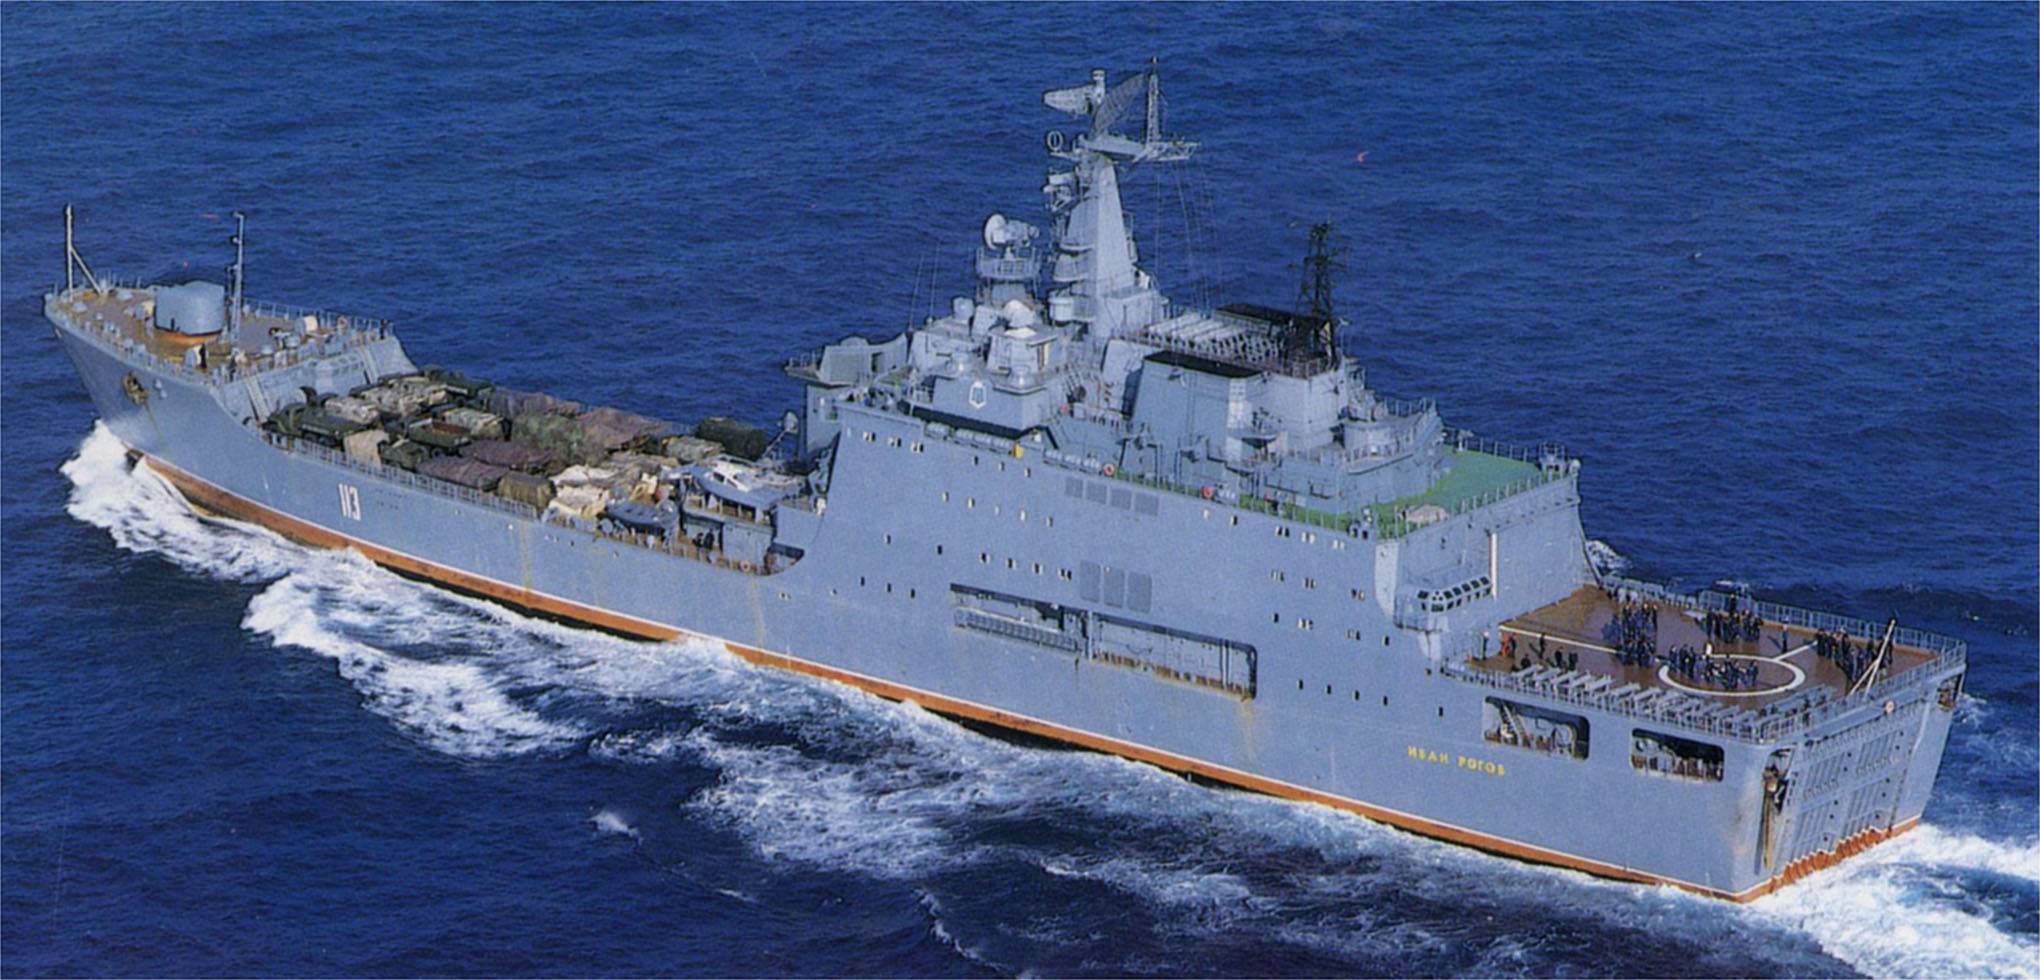 Проект 11711 - бдк, большие десантные корабли, история разработки, иван грен, конструкция и вооружение, характеристики, достоинства и недостатки